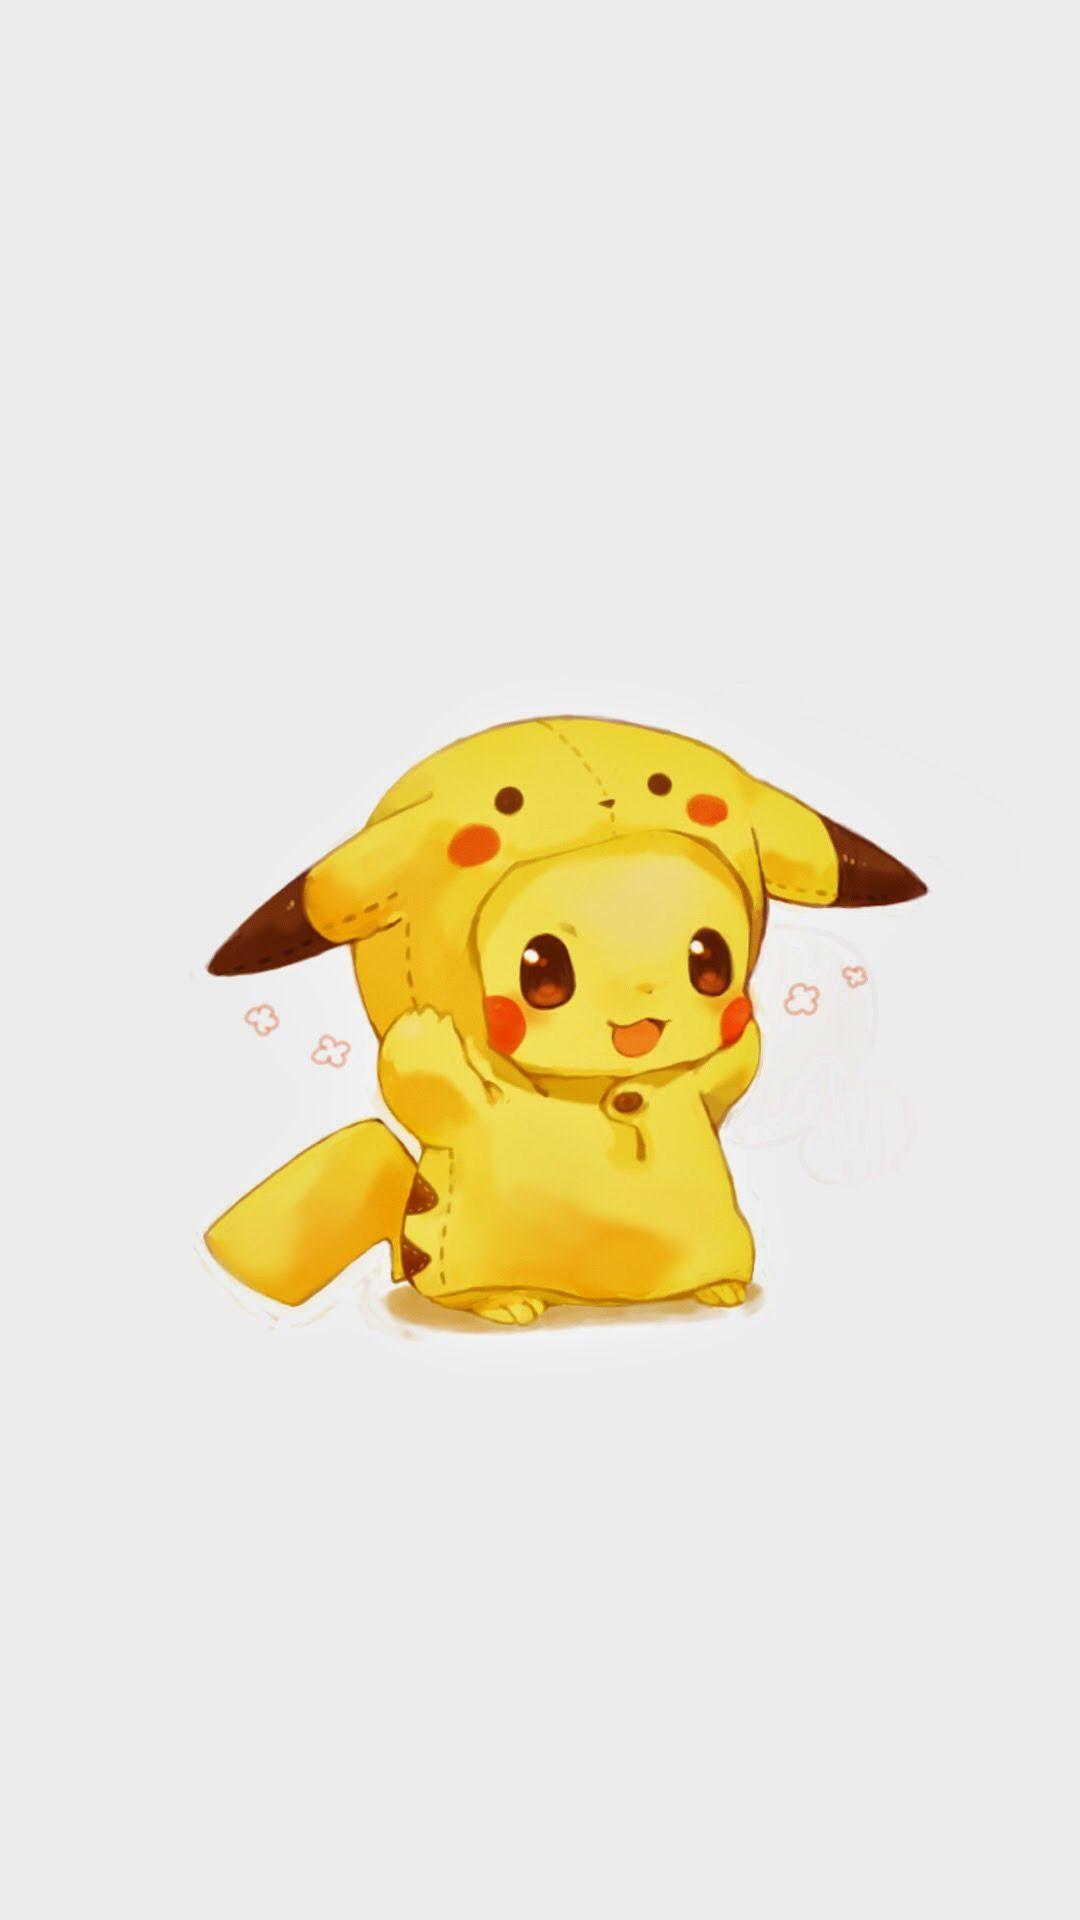 Cute Pikachu and Eevee Wallpapers  Top Free Cute Pikachu and Eevee  Backgrounds  WallpaperAccess